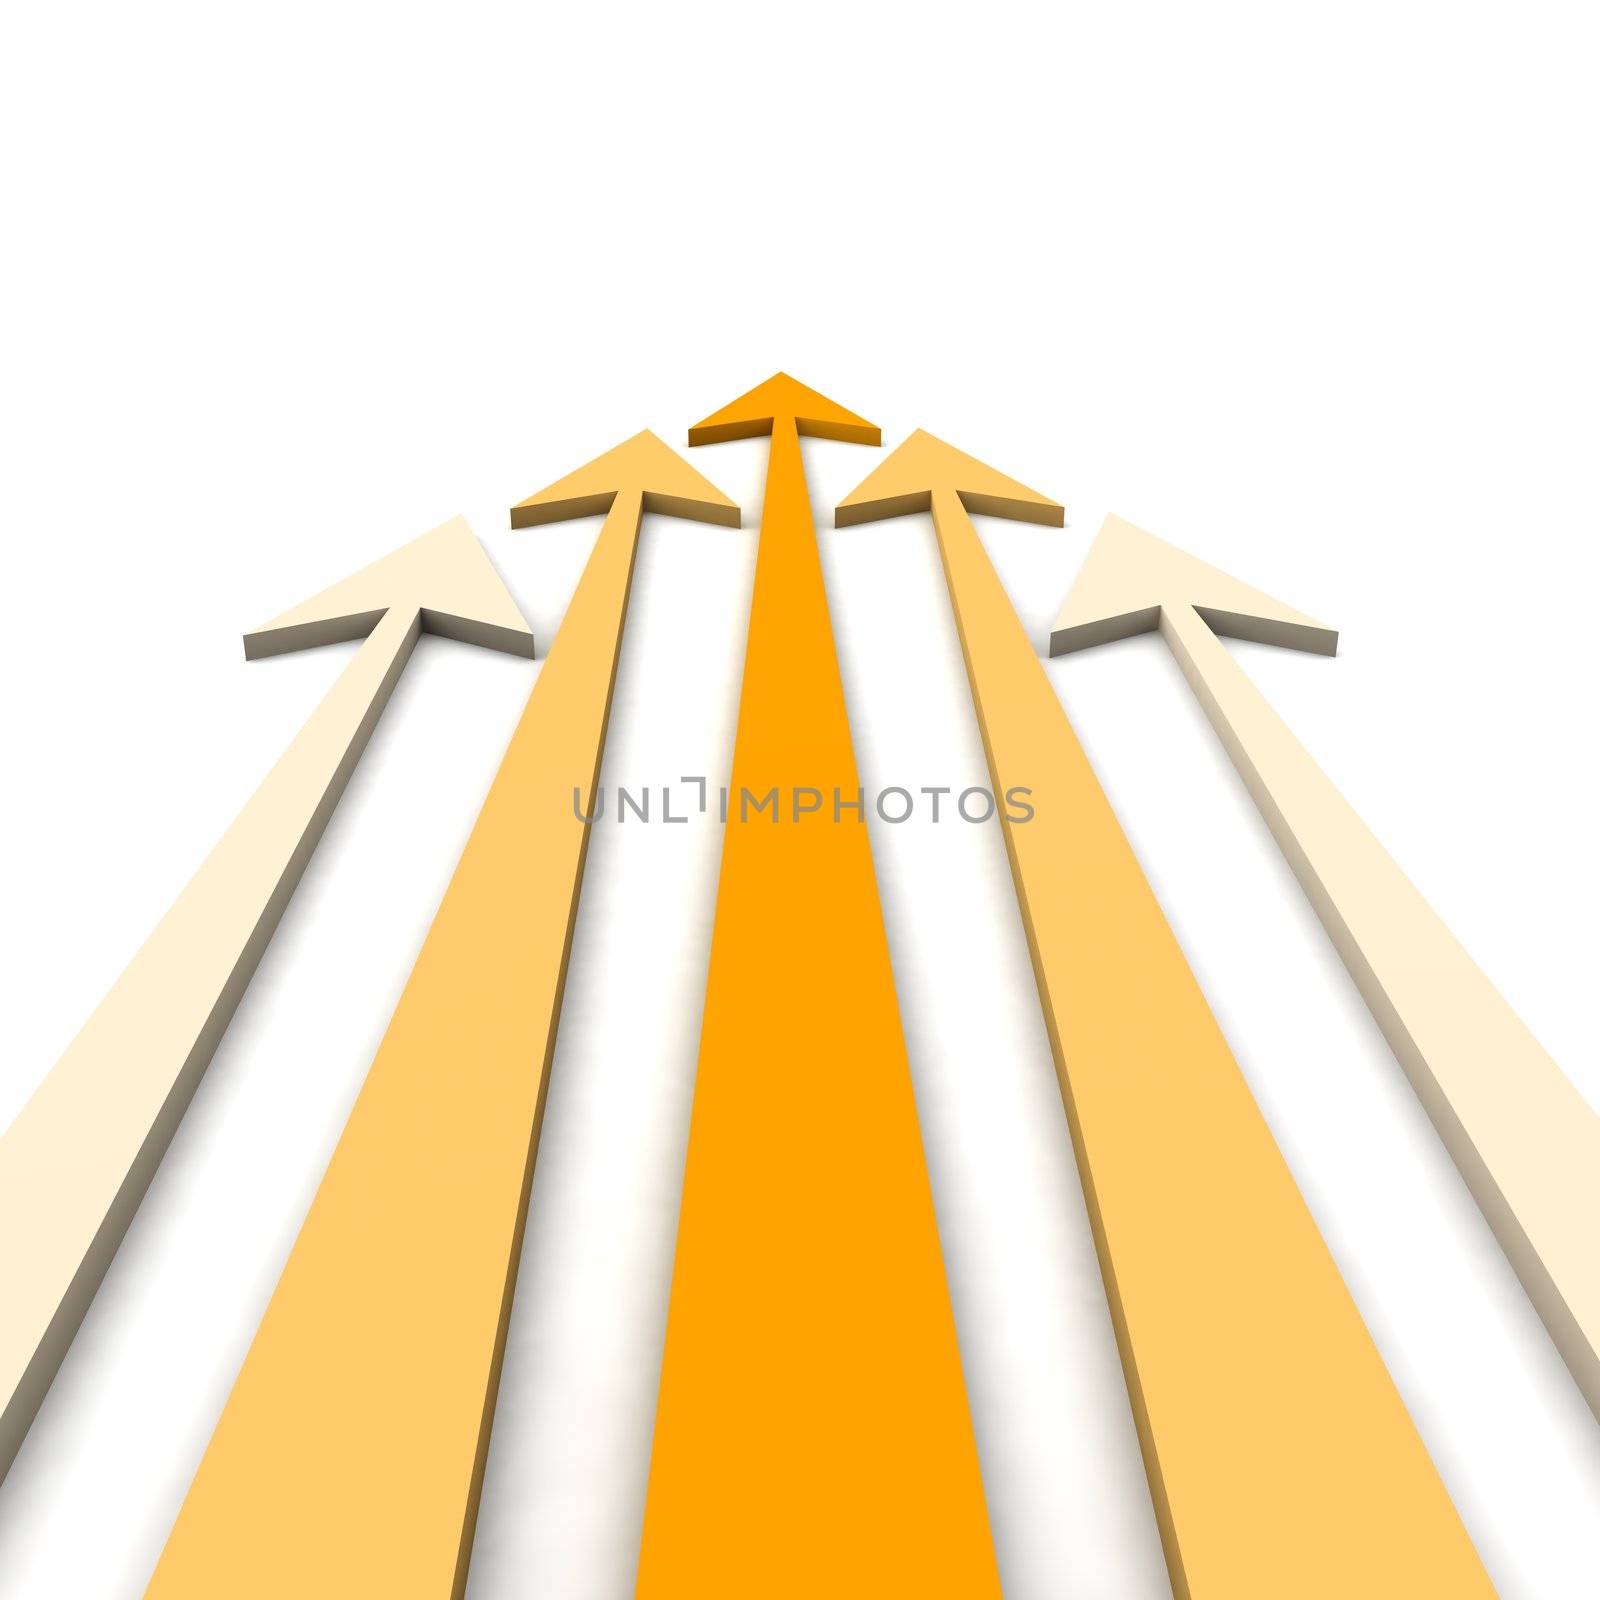 Orange arrows by skvoor